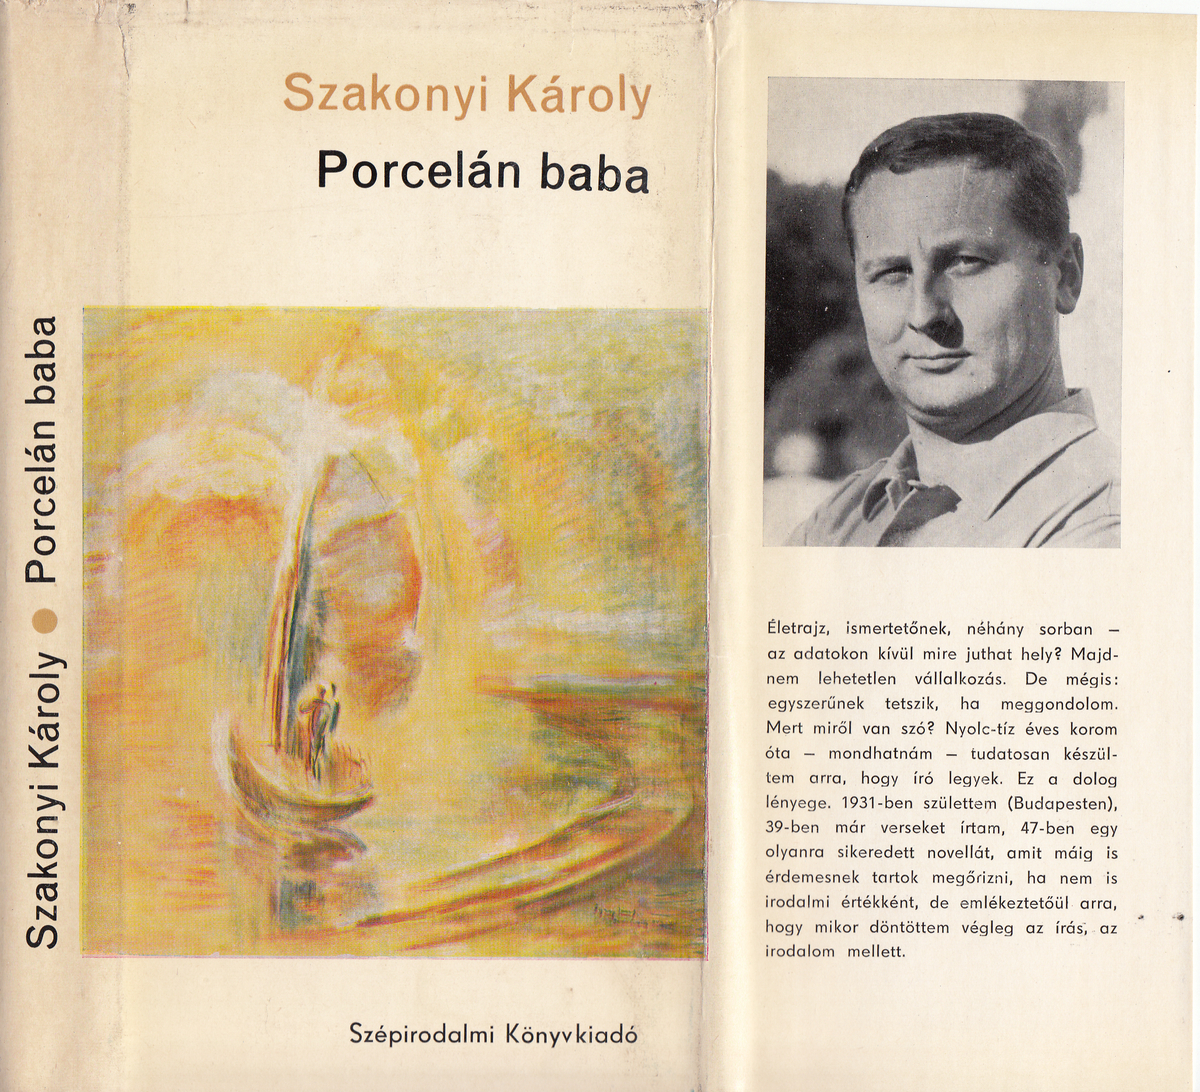 Szakonyi Károly: Porcelán baba, Szakonyi Károly | Library OPAC